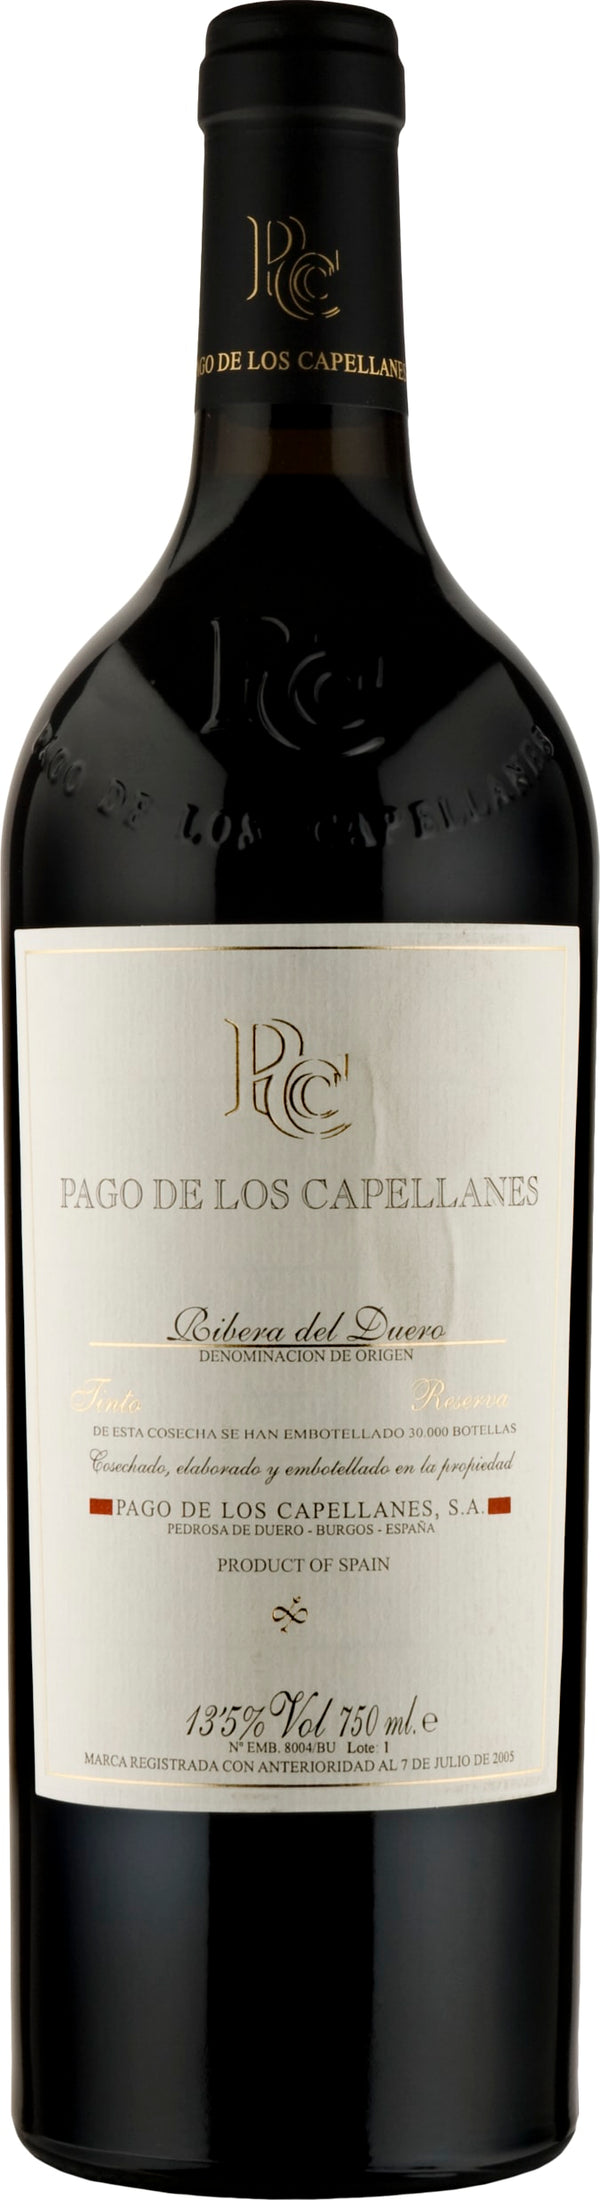 Pago de los Capellanes Reserva 2020 6x75cl - Just Wines 